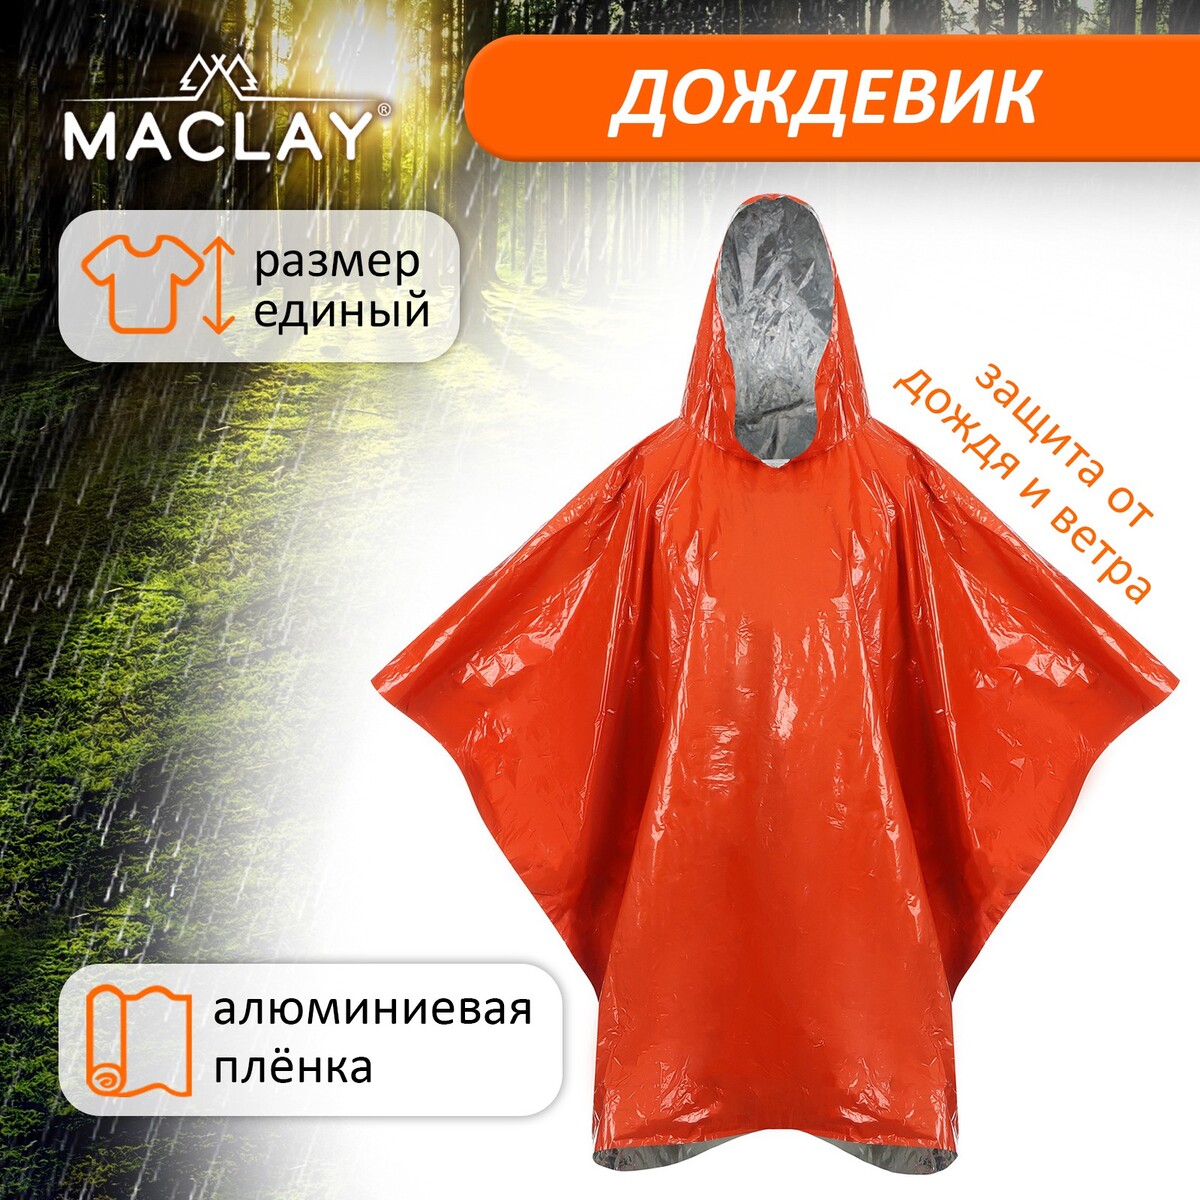 Дождевик maclay, фольгированный, 100х125 см, цвет оранжевый дождевик maclay рыбацкий шитый 65 мкр 200 г 10% р универсальный